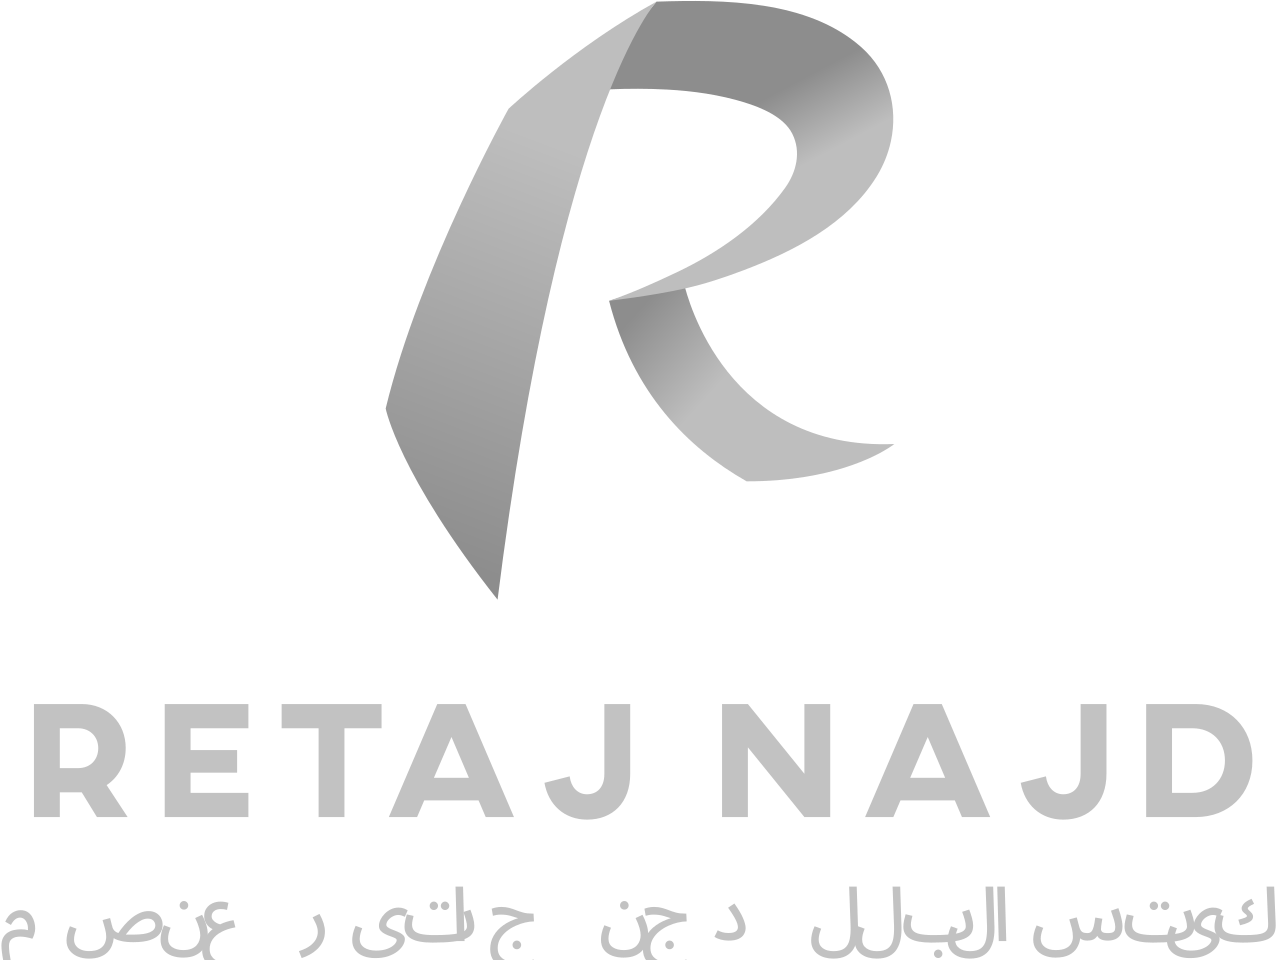 retaj najd's logo